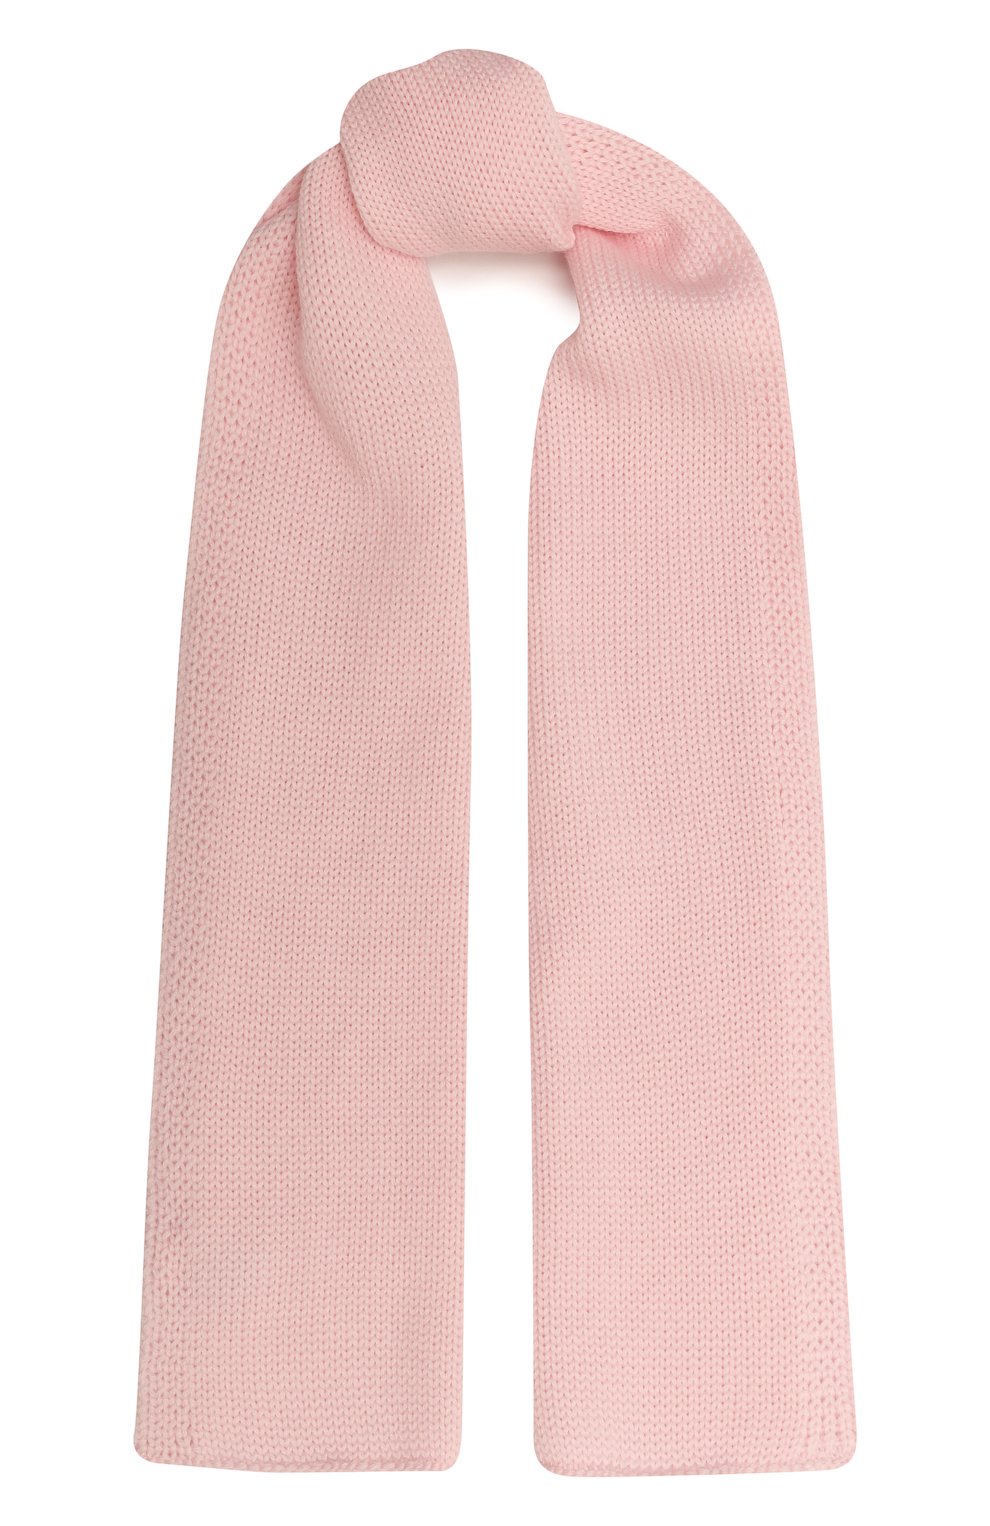 Детский шерстяной шарф CATYA розового цвета, арт. 226746 | Фото 1 (Материал: Текстиль, Шерсть)